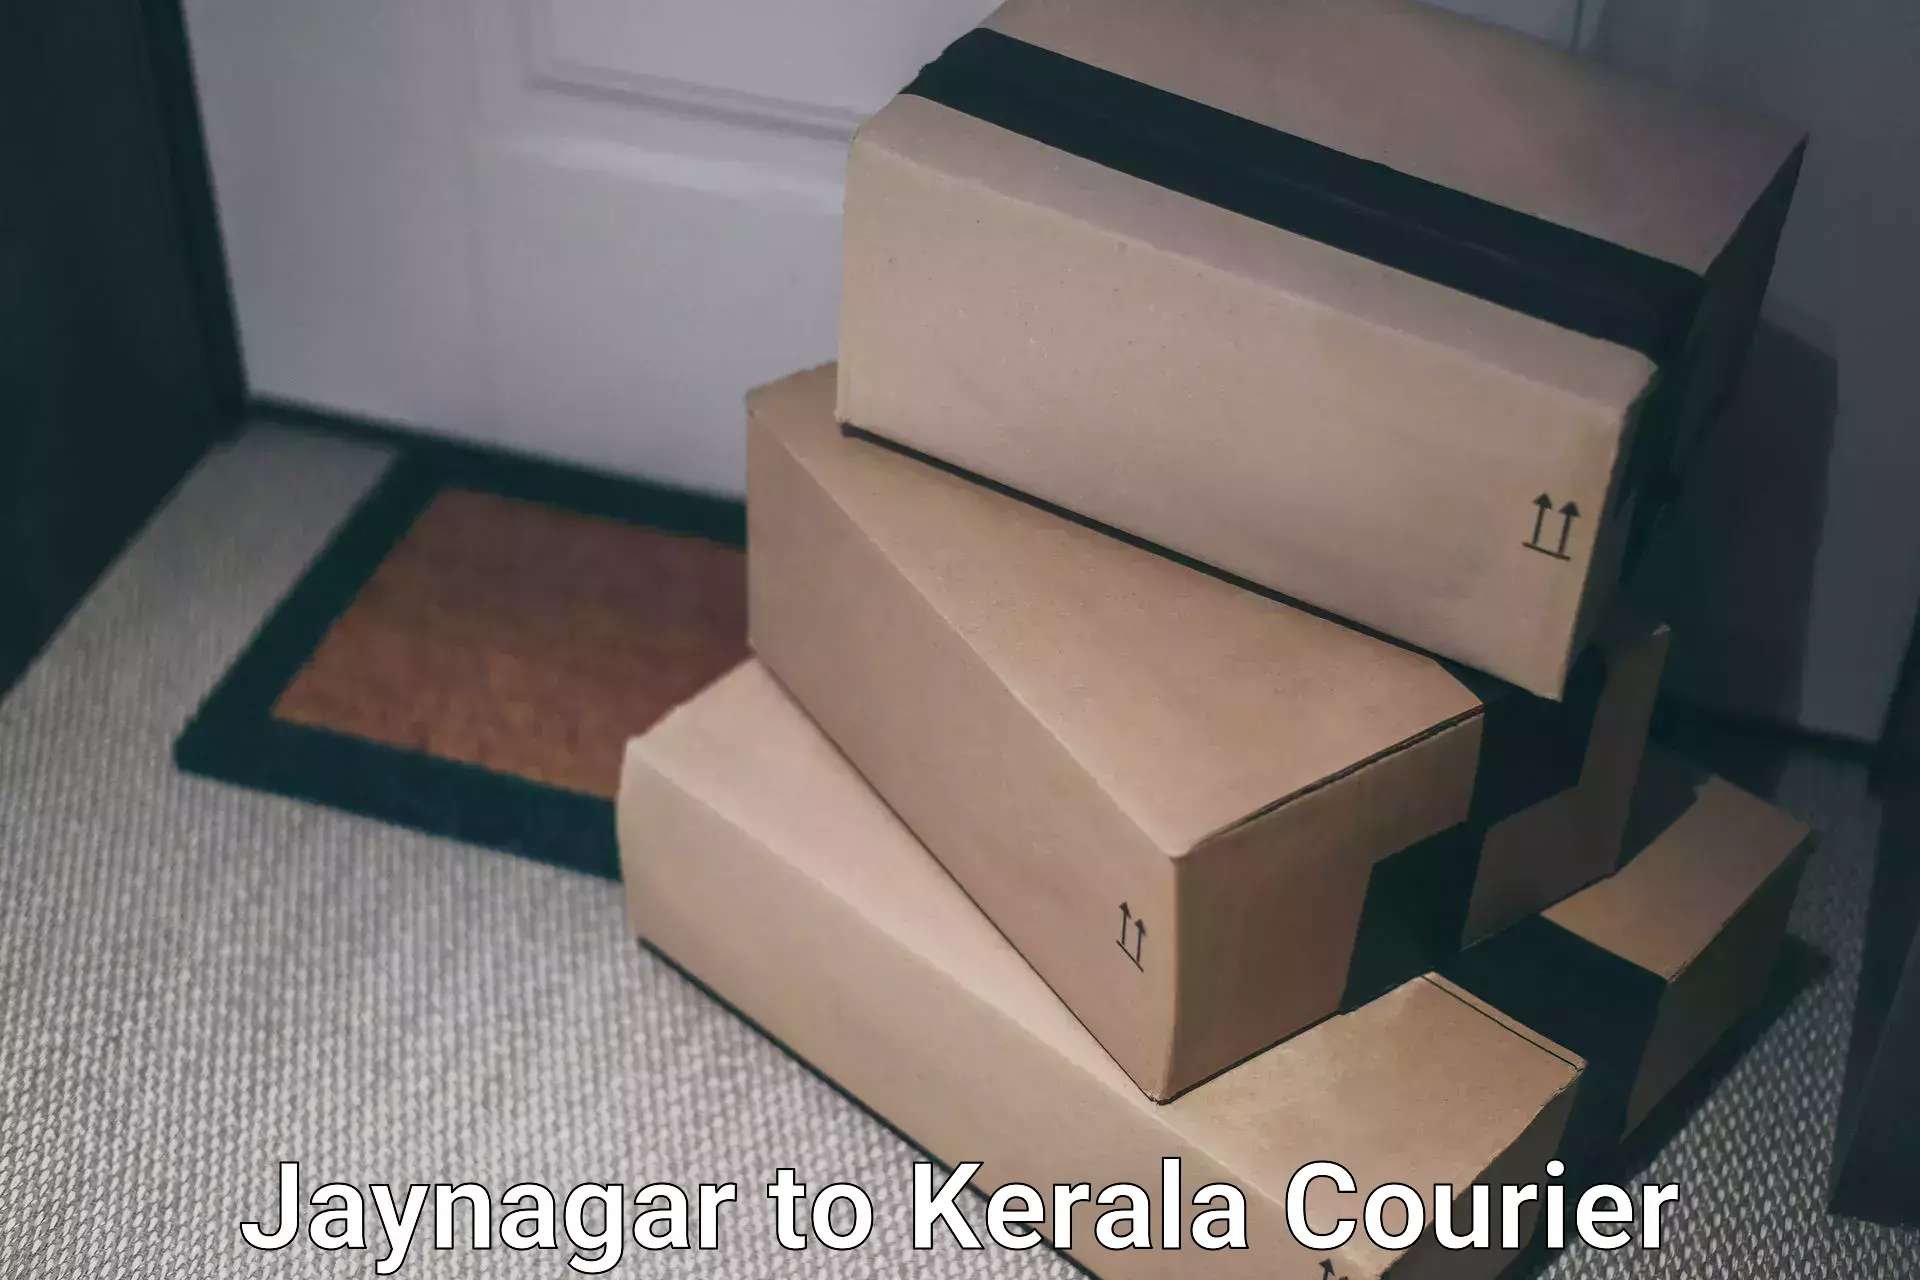 Efficient cargo services Jaynagar to Trivandrum